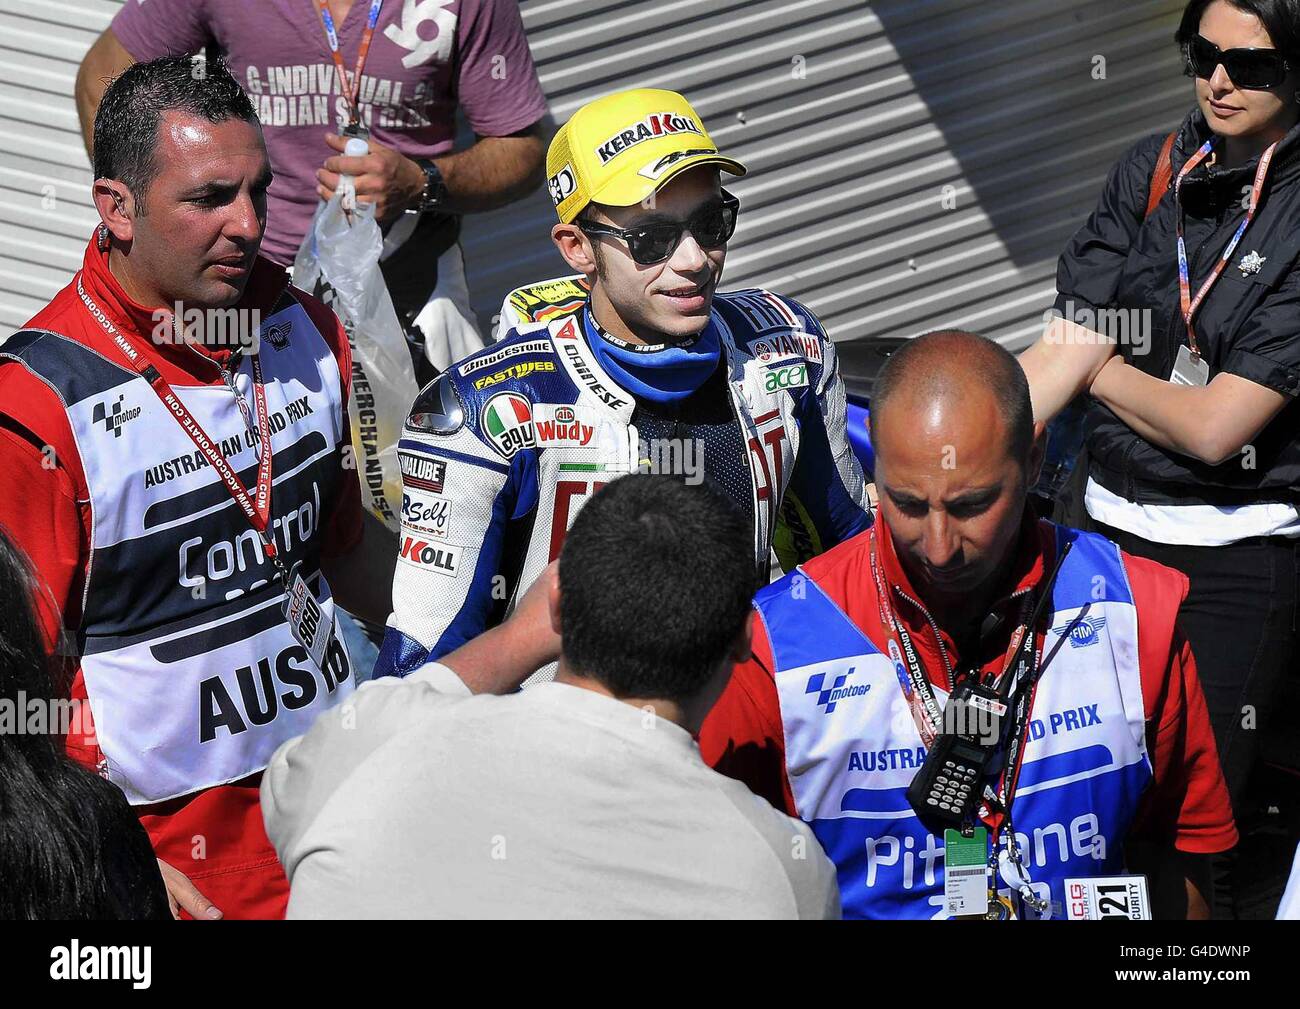 Valentino Rossi, campione del mondo MotoGP 2008, ha ritratto di camminare fino al box garage nella giornata di gara a Phillip Island Australia. Rossi sarà 12° sulla griglia di gara per Fiat Yamaha. Foto Stock